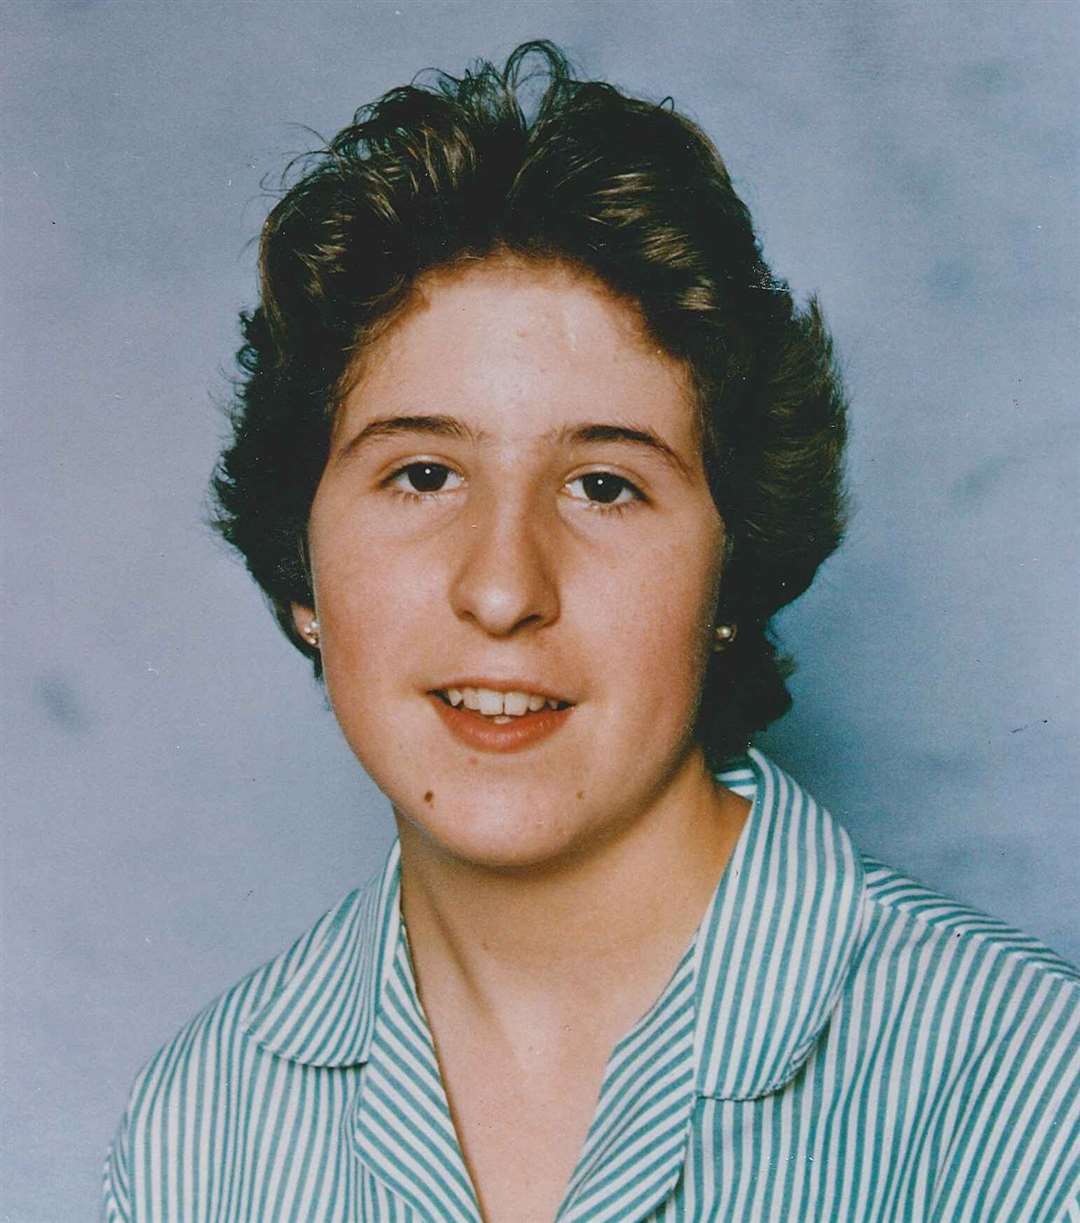 Dartford schoolgirl Claire Tiltman was murdered in January 1993.